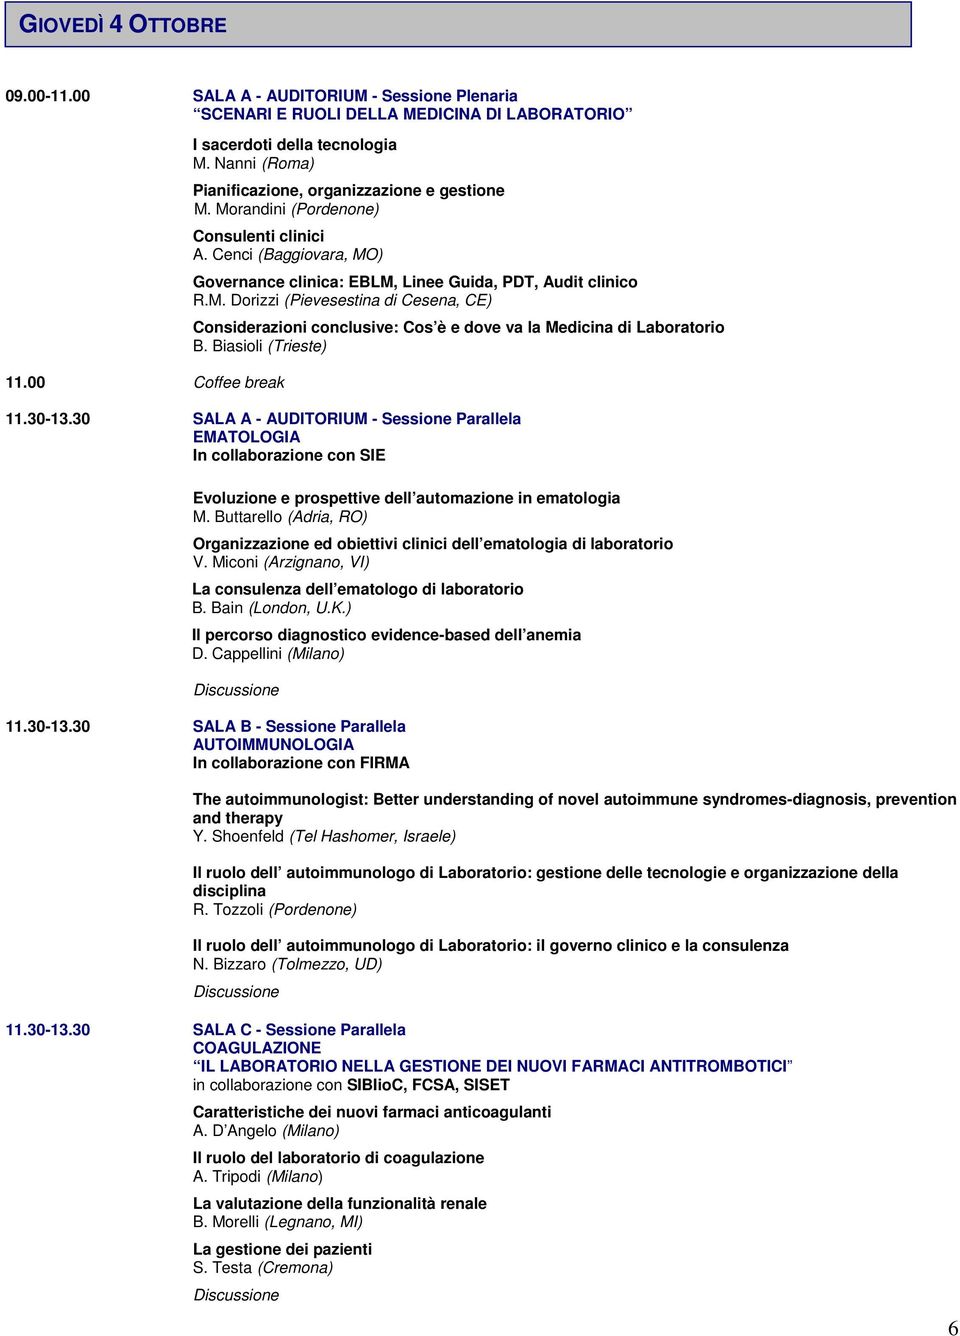 Biasioli (Trieste) 11.30-13.30 SALA A - AUDITORIUM - Sessione Parallela EMATOLOGIA In collaborazione con SIE Evoluzione e prospettive dell automazione in ematologia M.